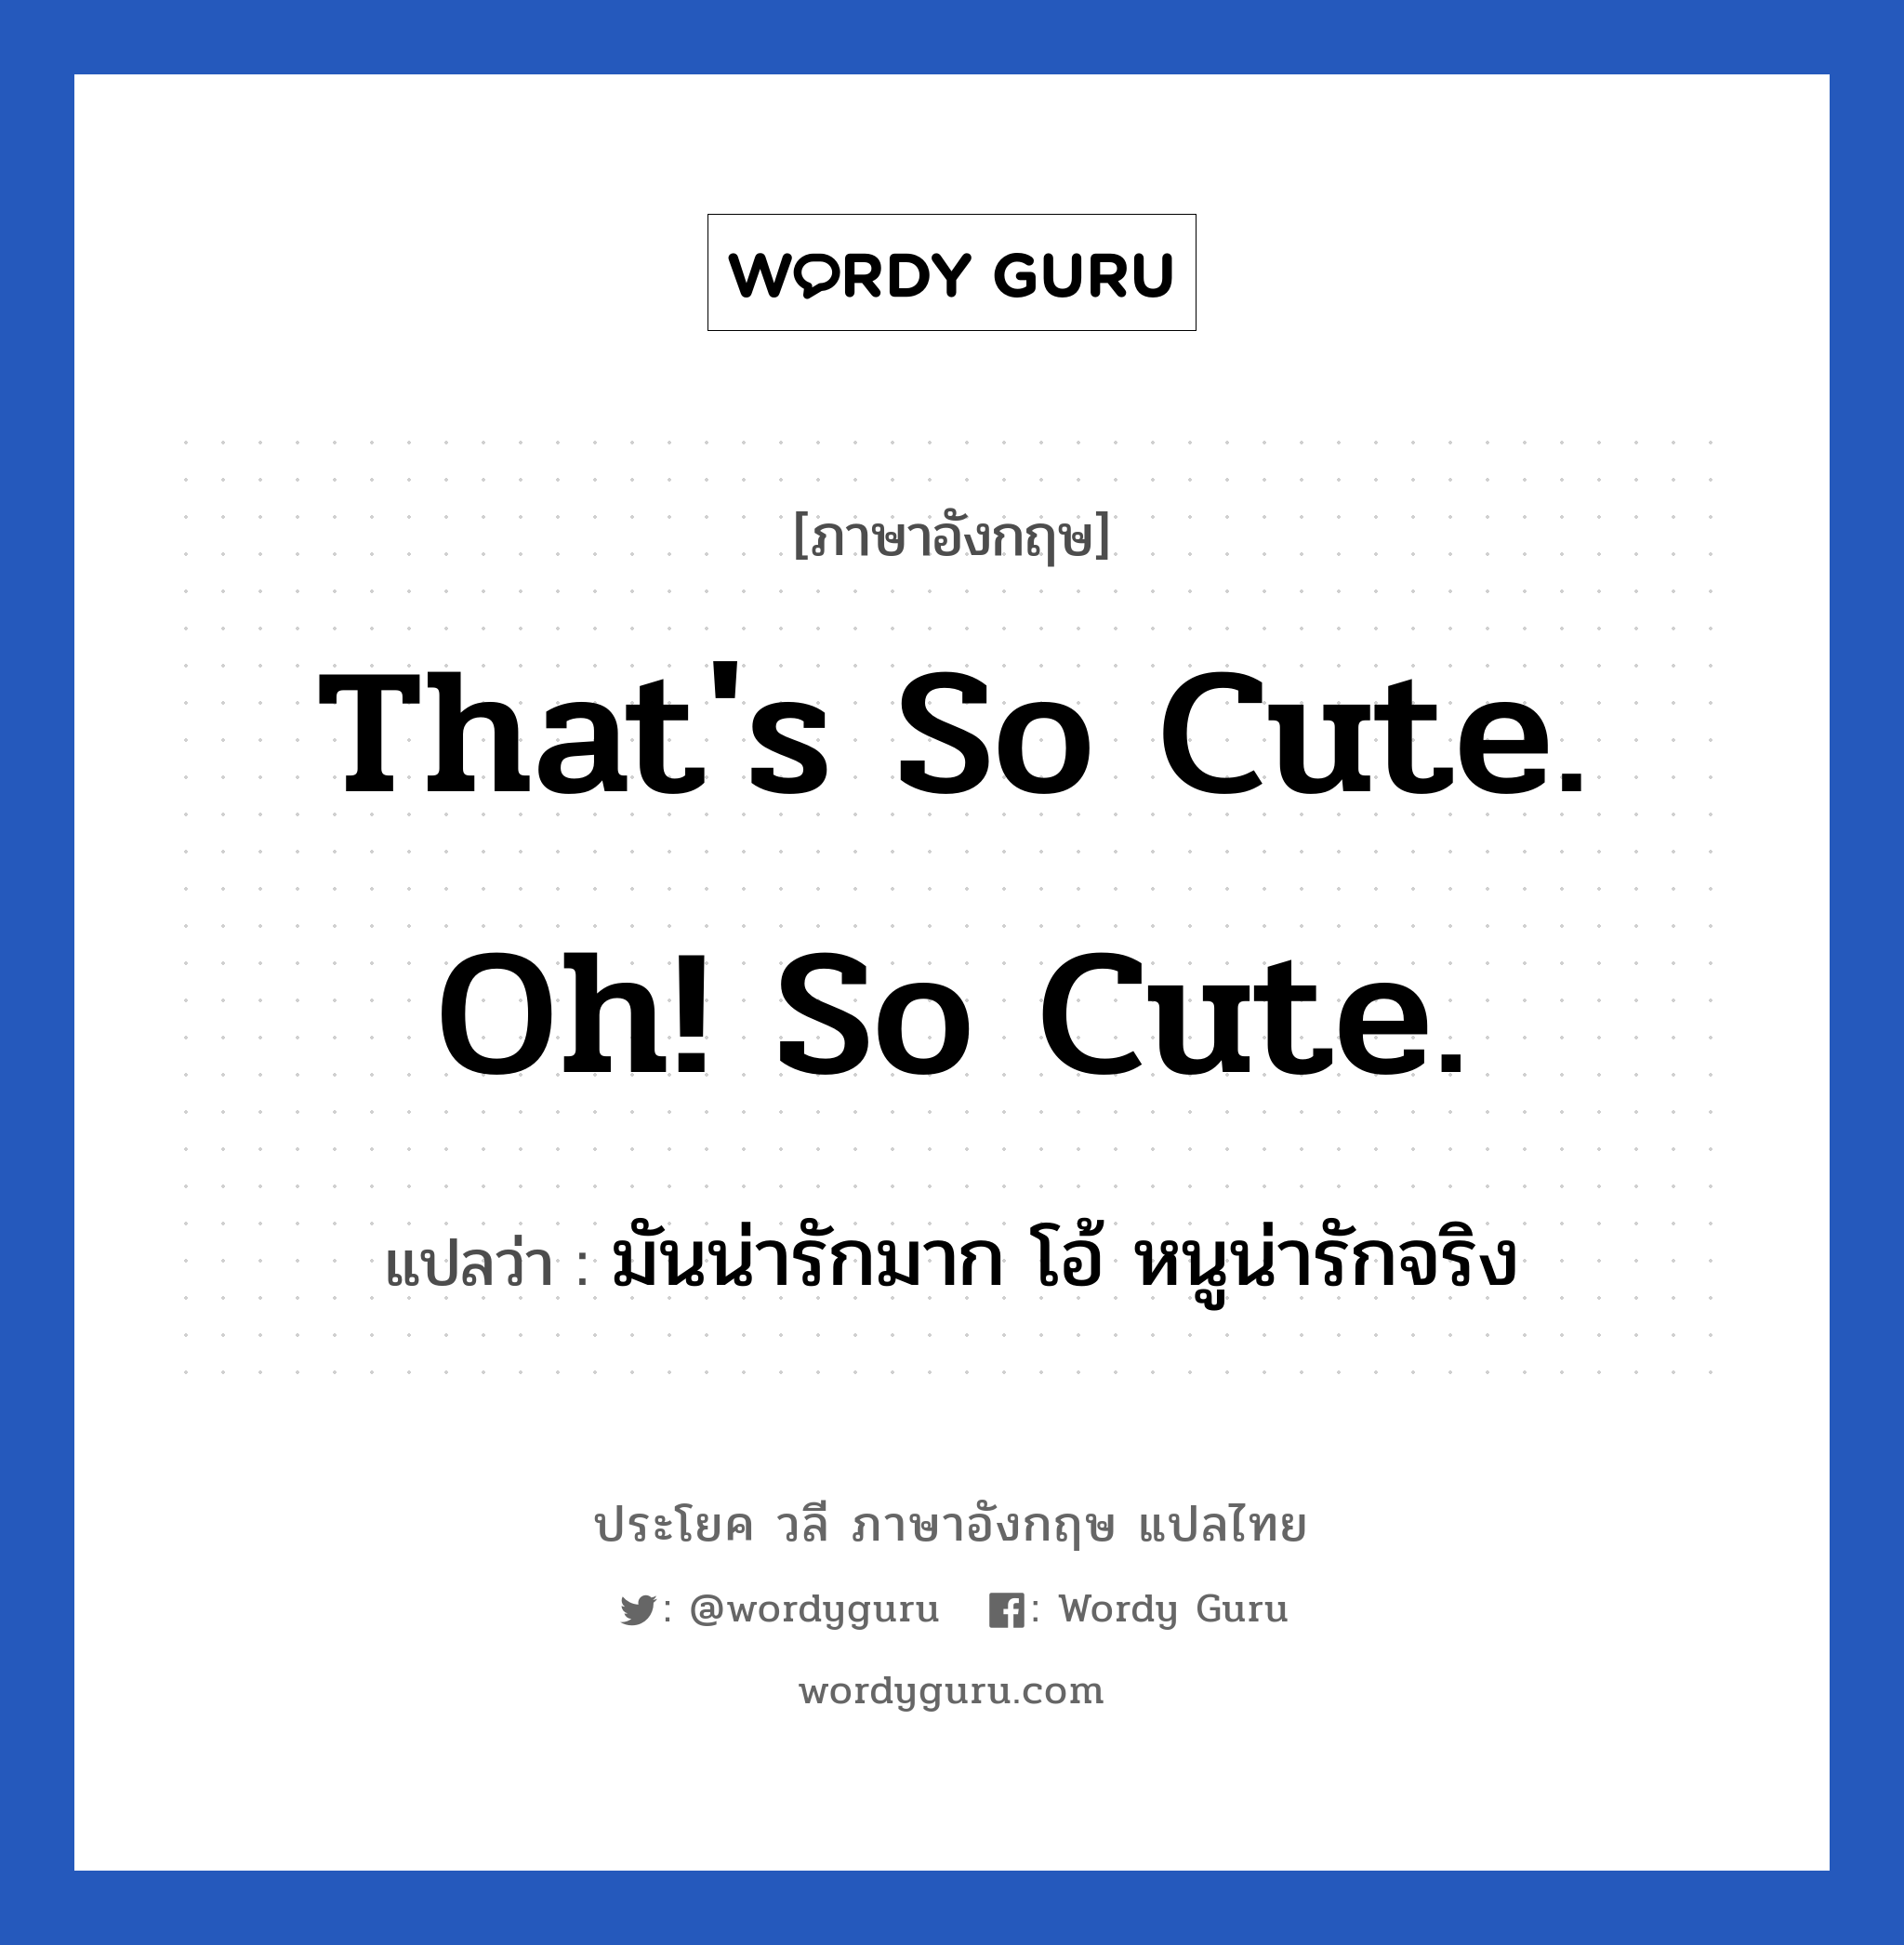 มันน่ารักมาก โอ้ หนูน่ารักจริง ภาษาอังกฤษ?, วลีภาษาอังกฤษ มันน่ารักมาก โอ้ หนูน่ารักจริง แปลว่า That's so cute. oh! So cute. หมวด คำชมเชย